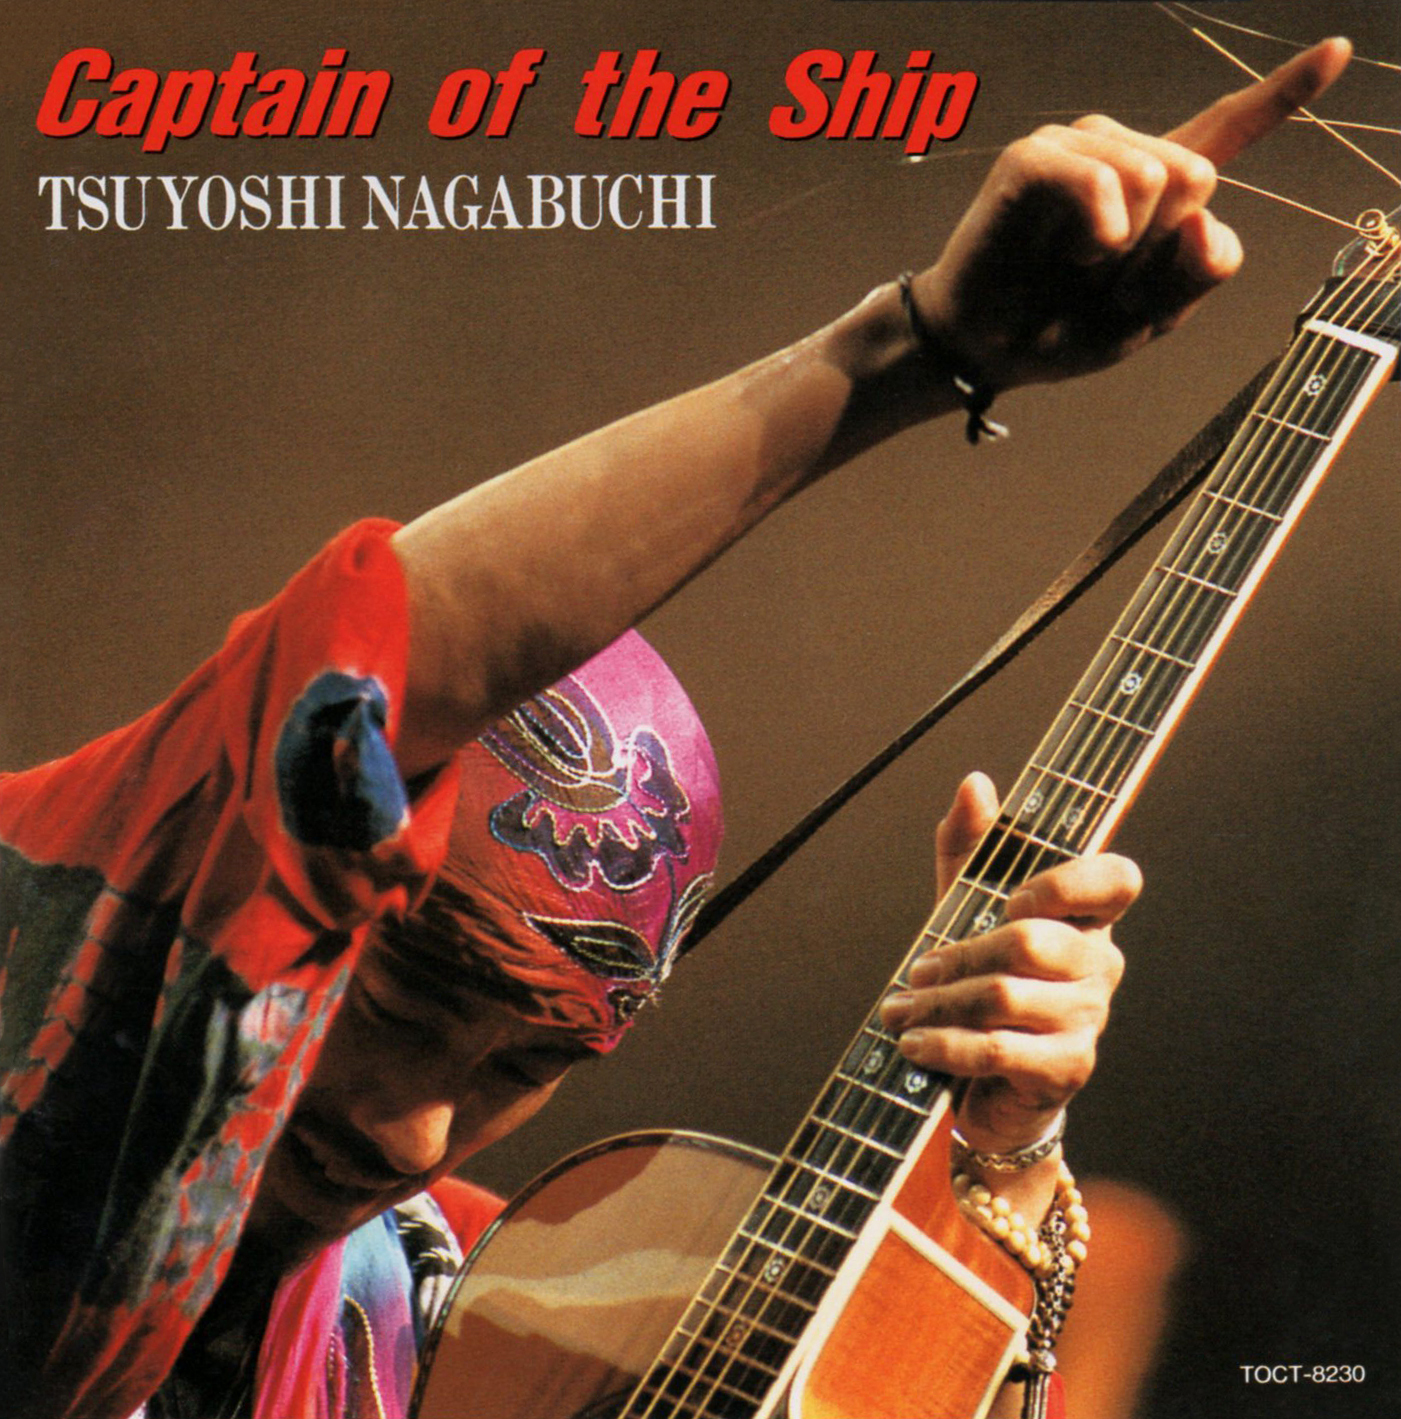 長渕剛 (ながぶちつよし) 14thアルバム『Captain of the Ship (キャプテン・オブ・ザ・シップ)』(1993年11月1日) 高画質CDジャケット画像